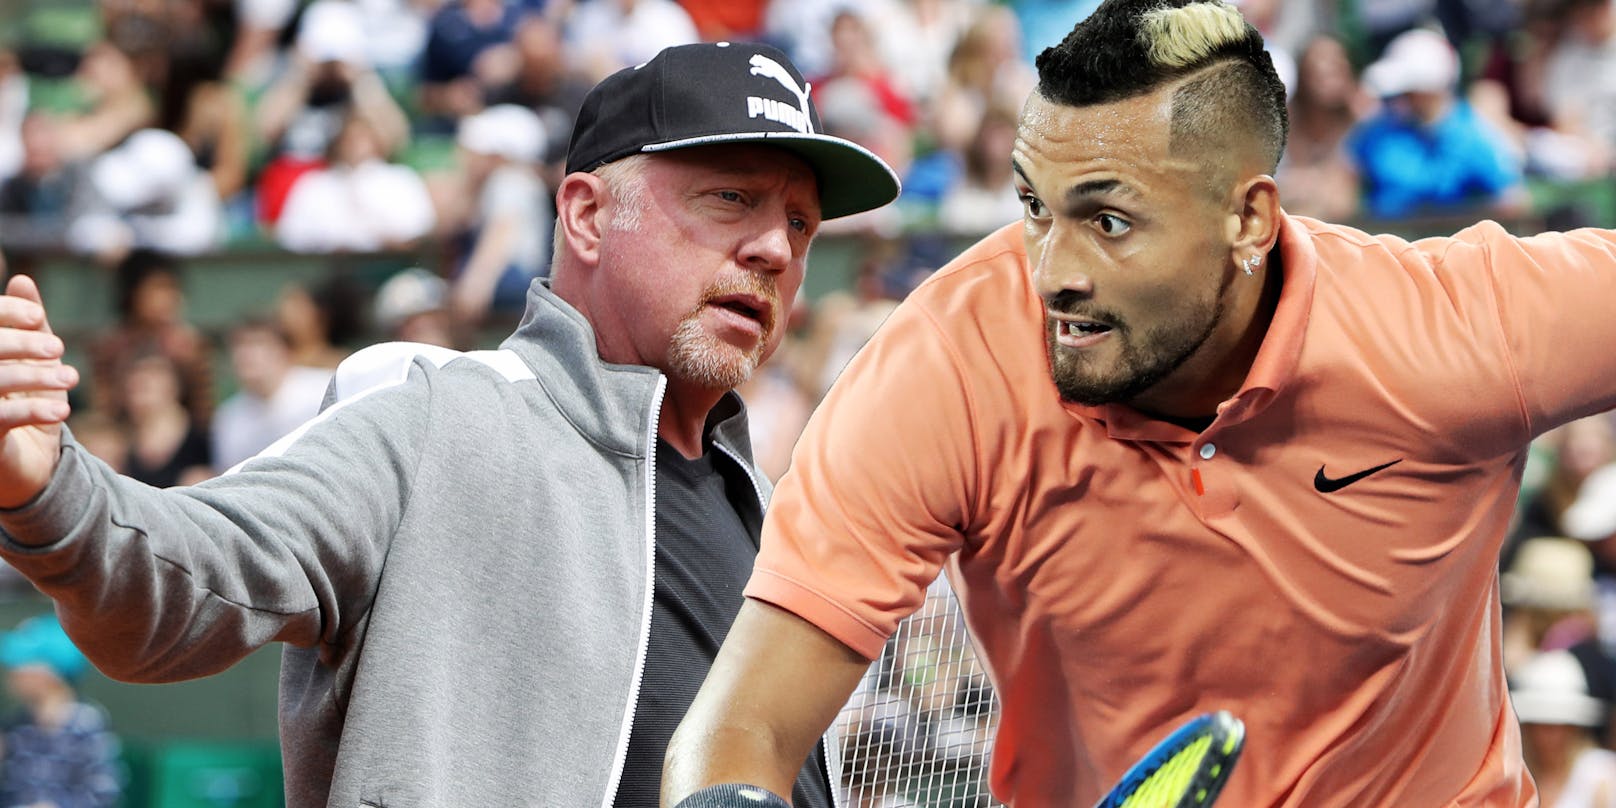 Boris Becker gegen Nick Kyrgios - ein heftiges Wortduell.